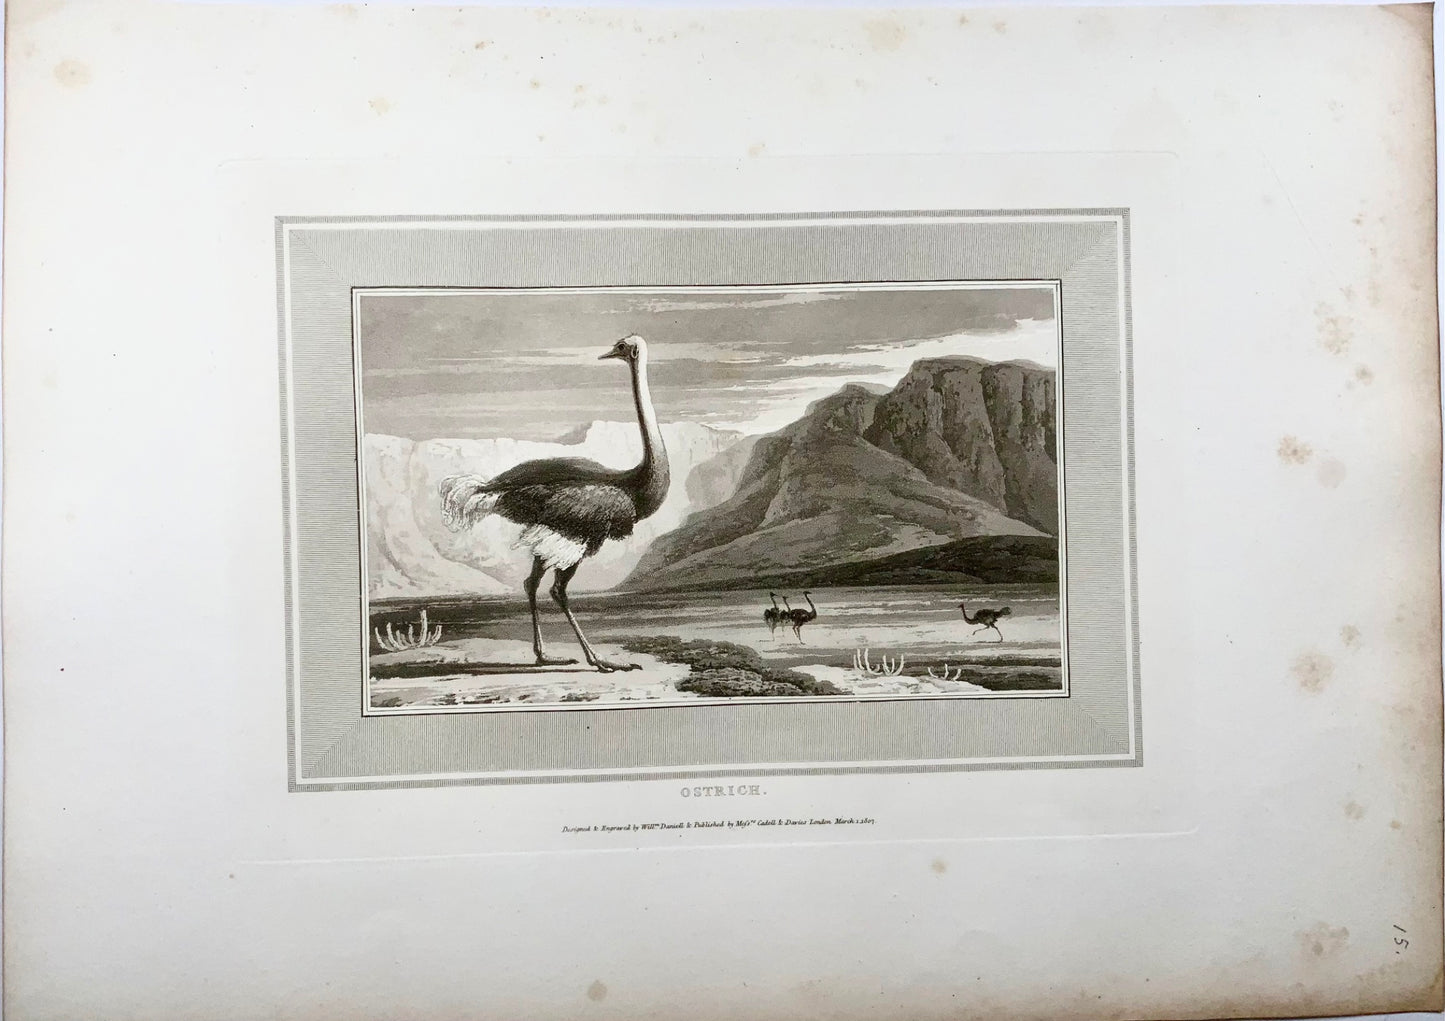 1807 William Daniell, Ostrich, ornithology, fine folio aquatint